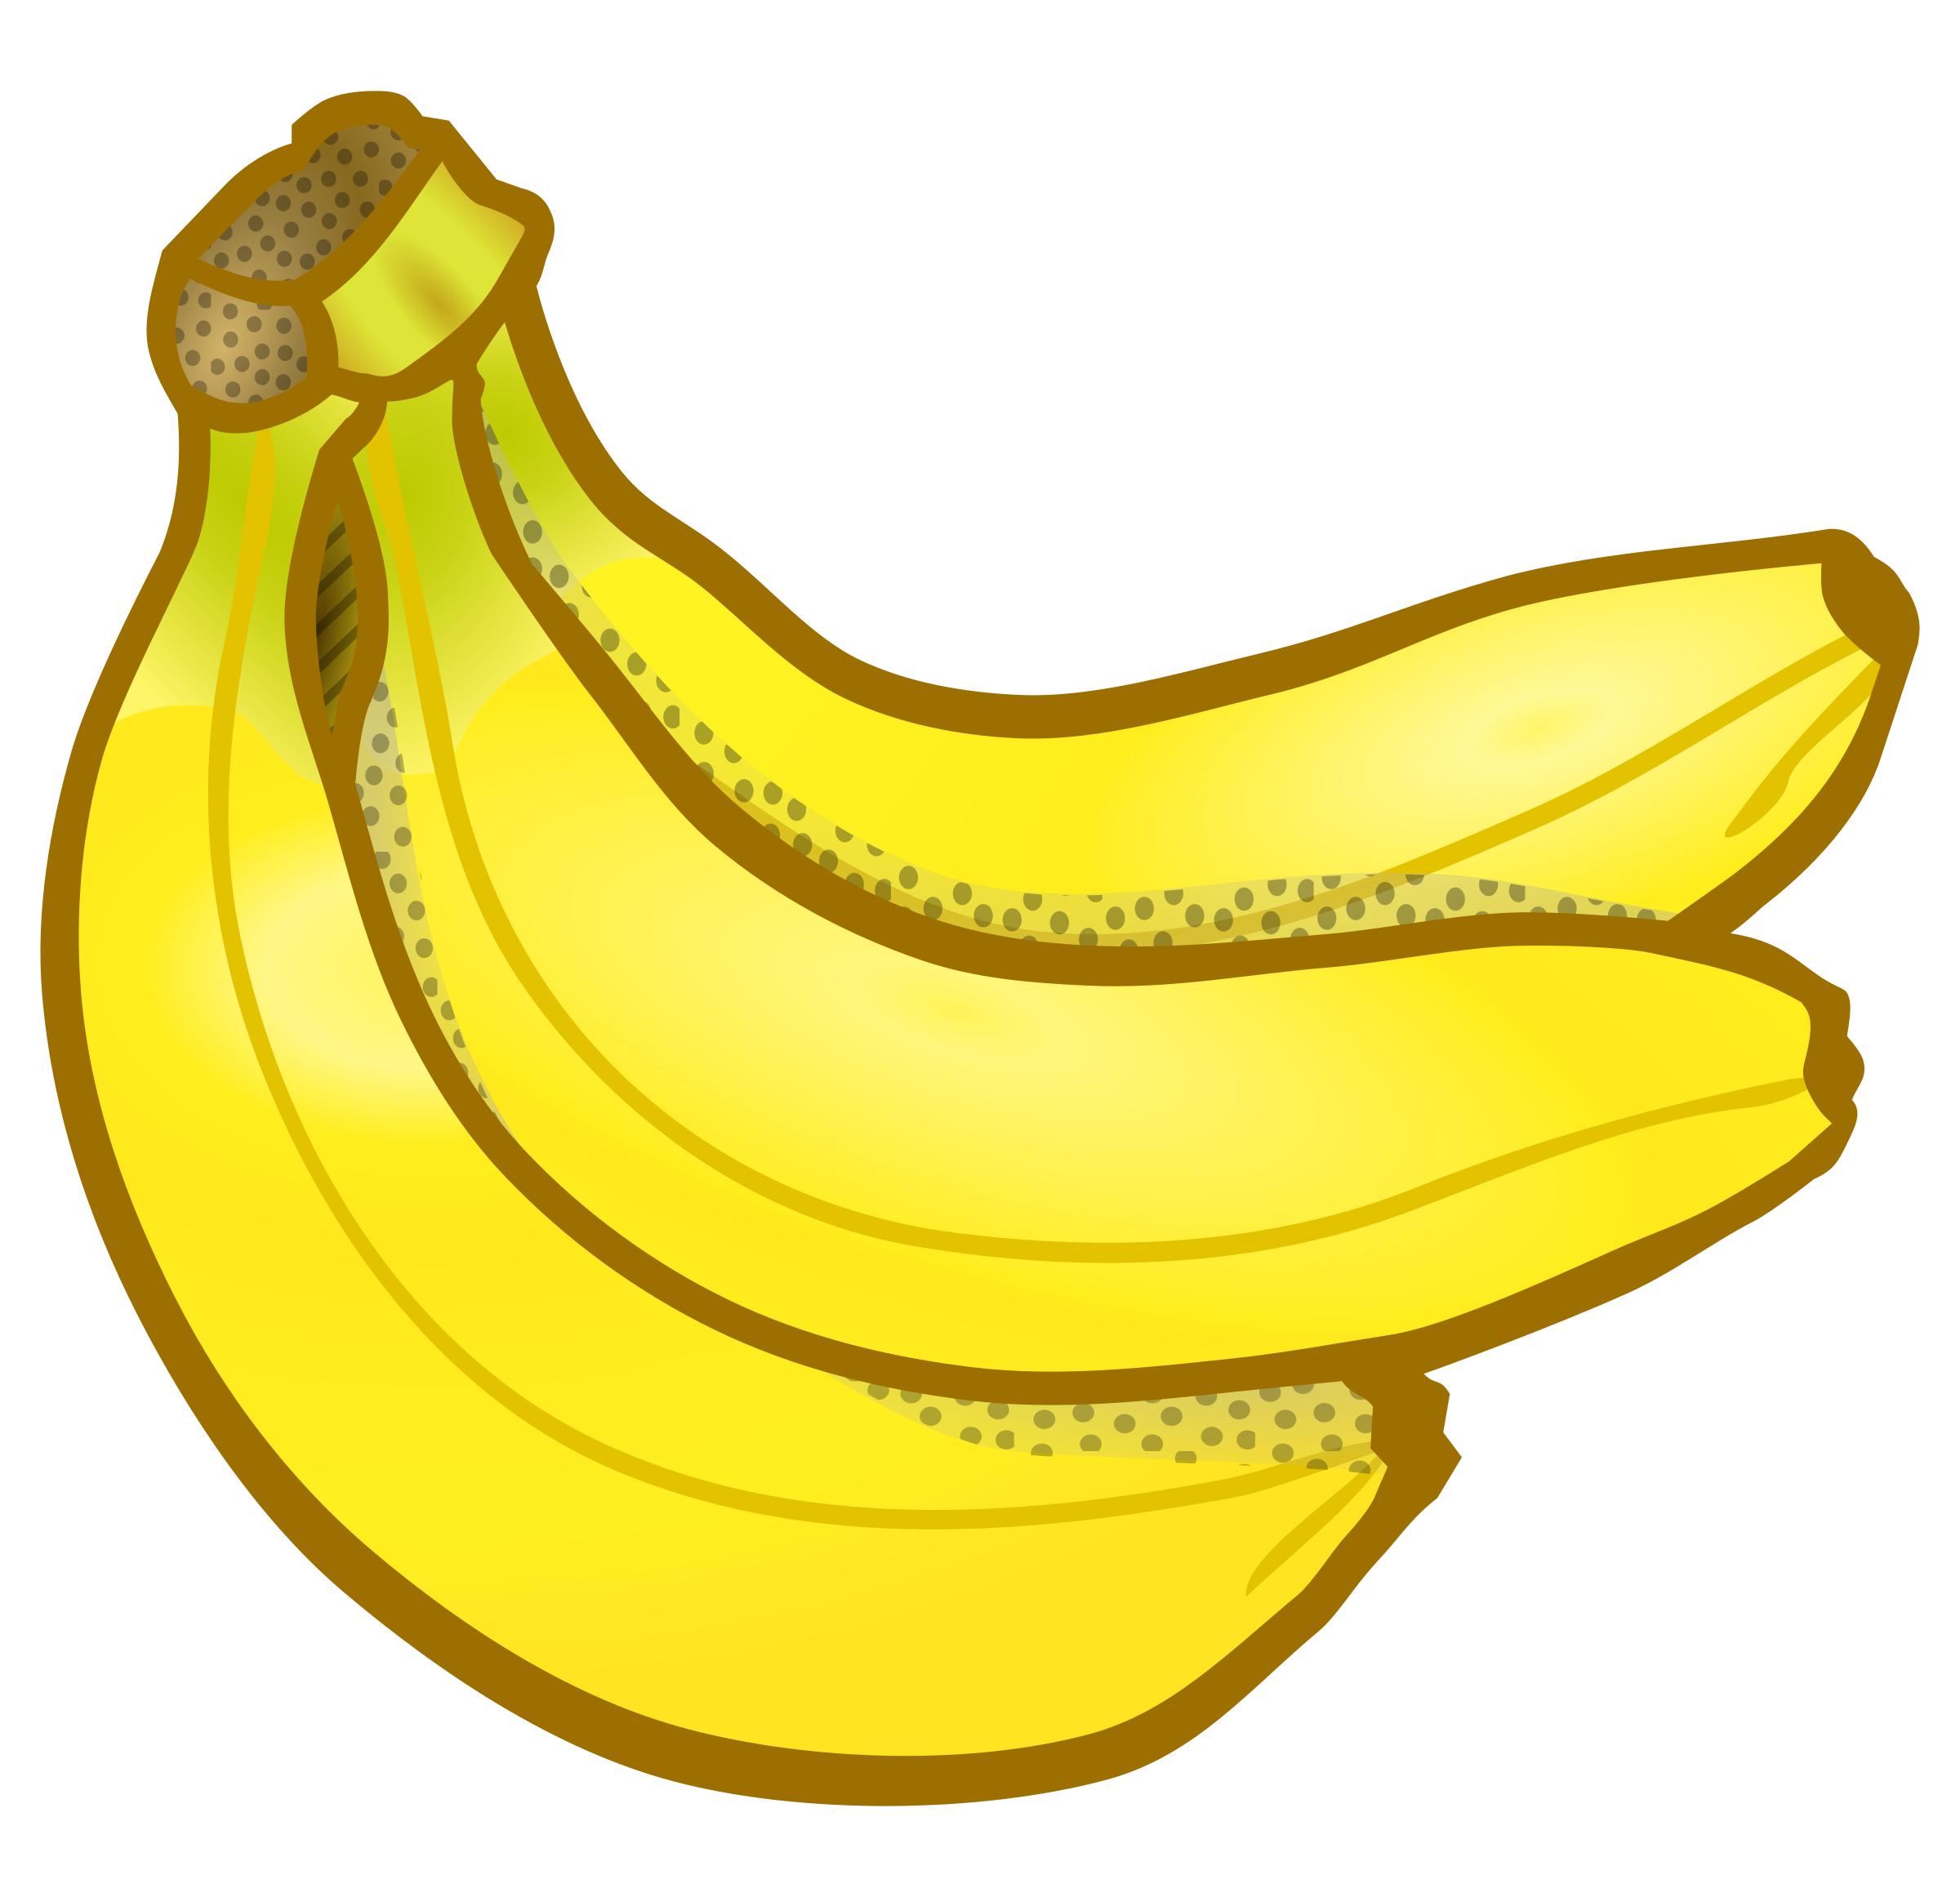 Free icons png images. Bananas clipart 3 banana